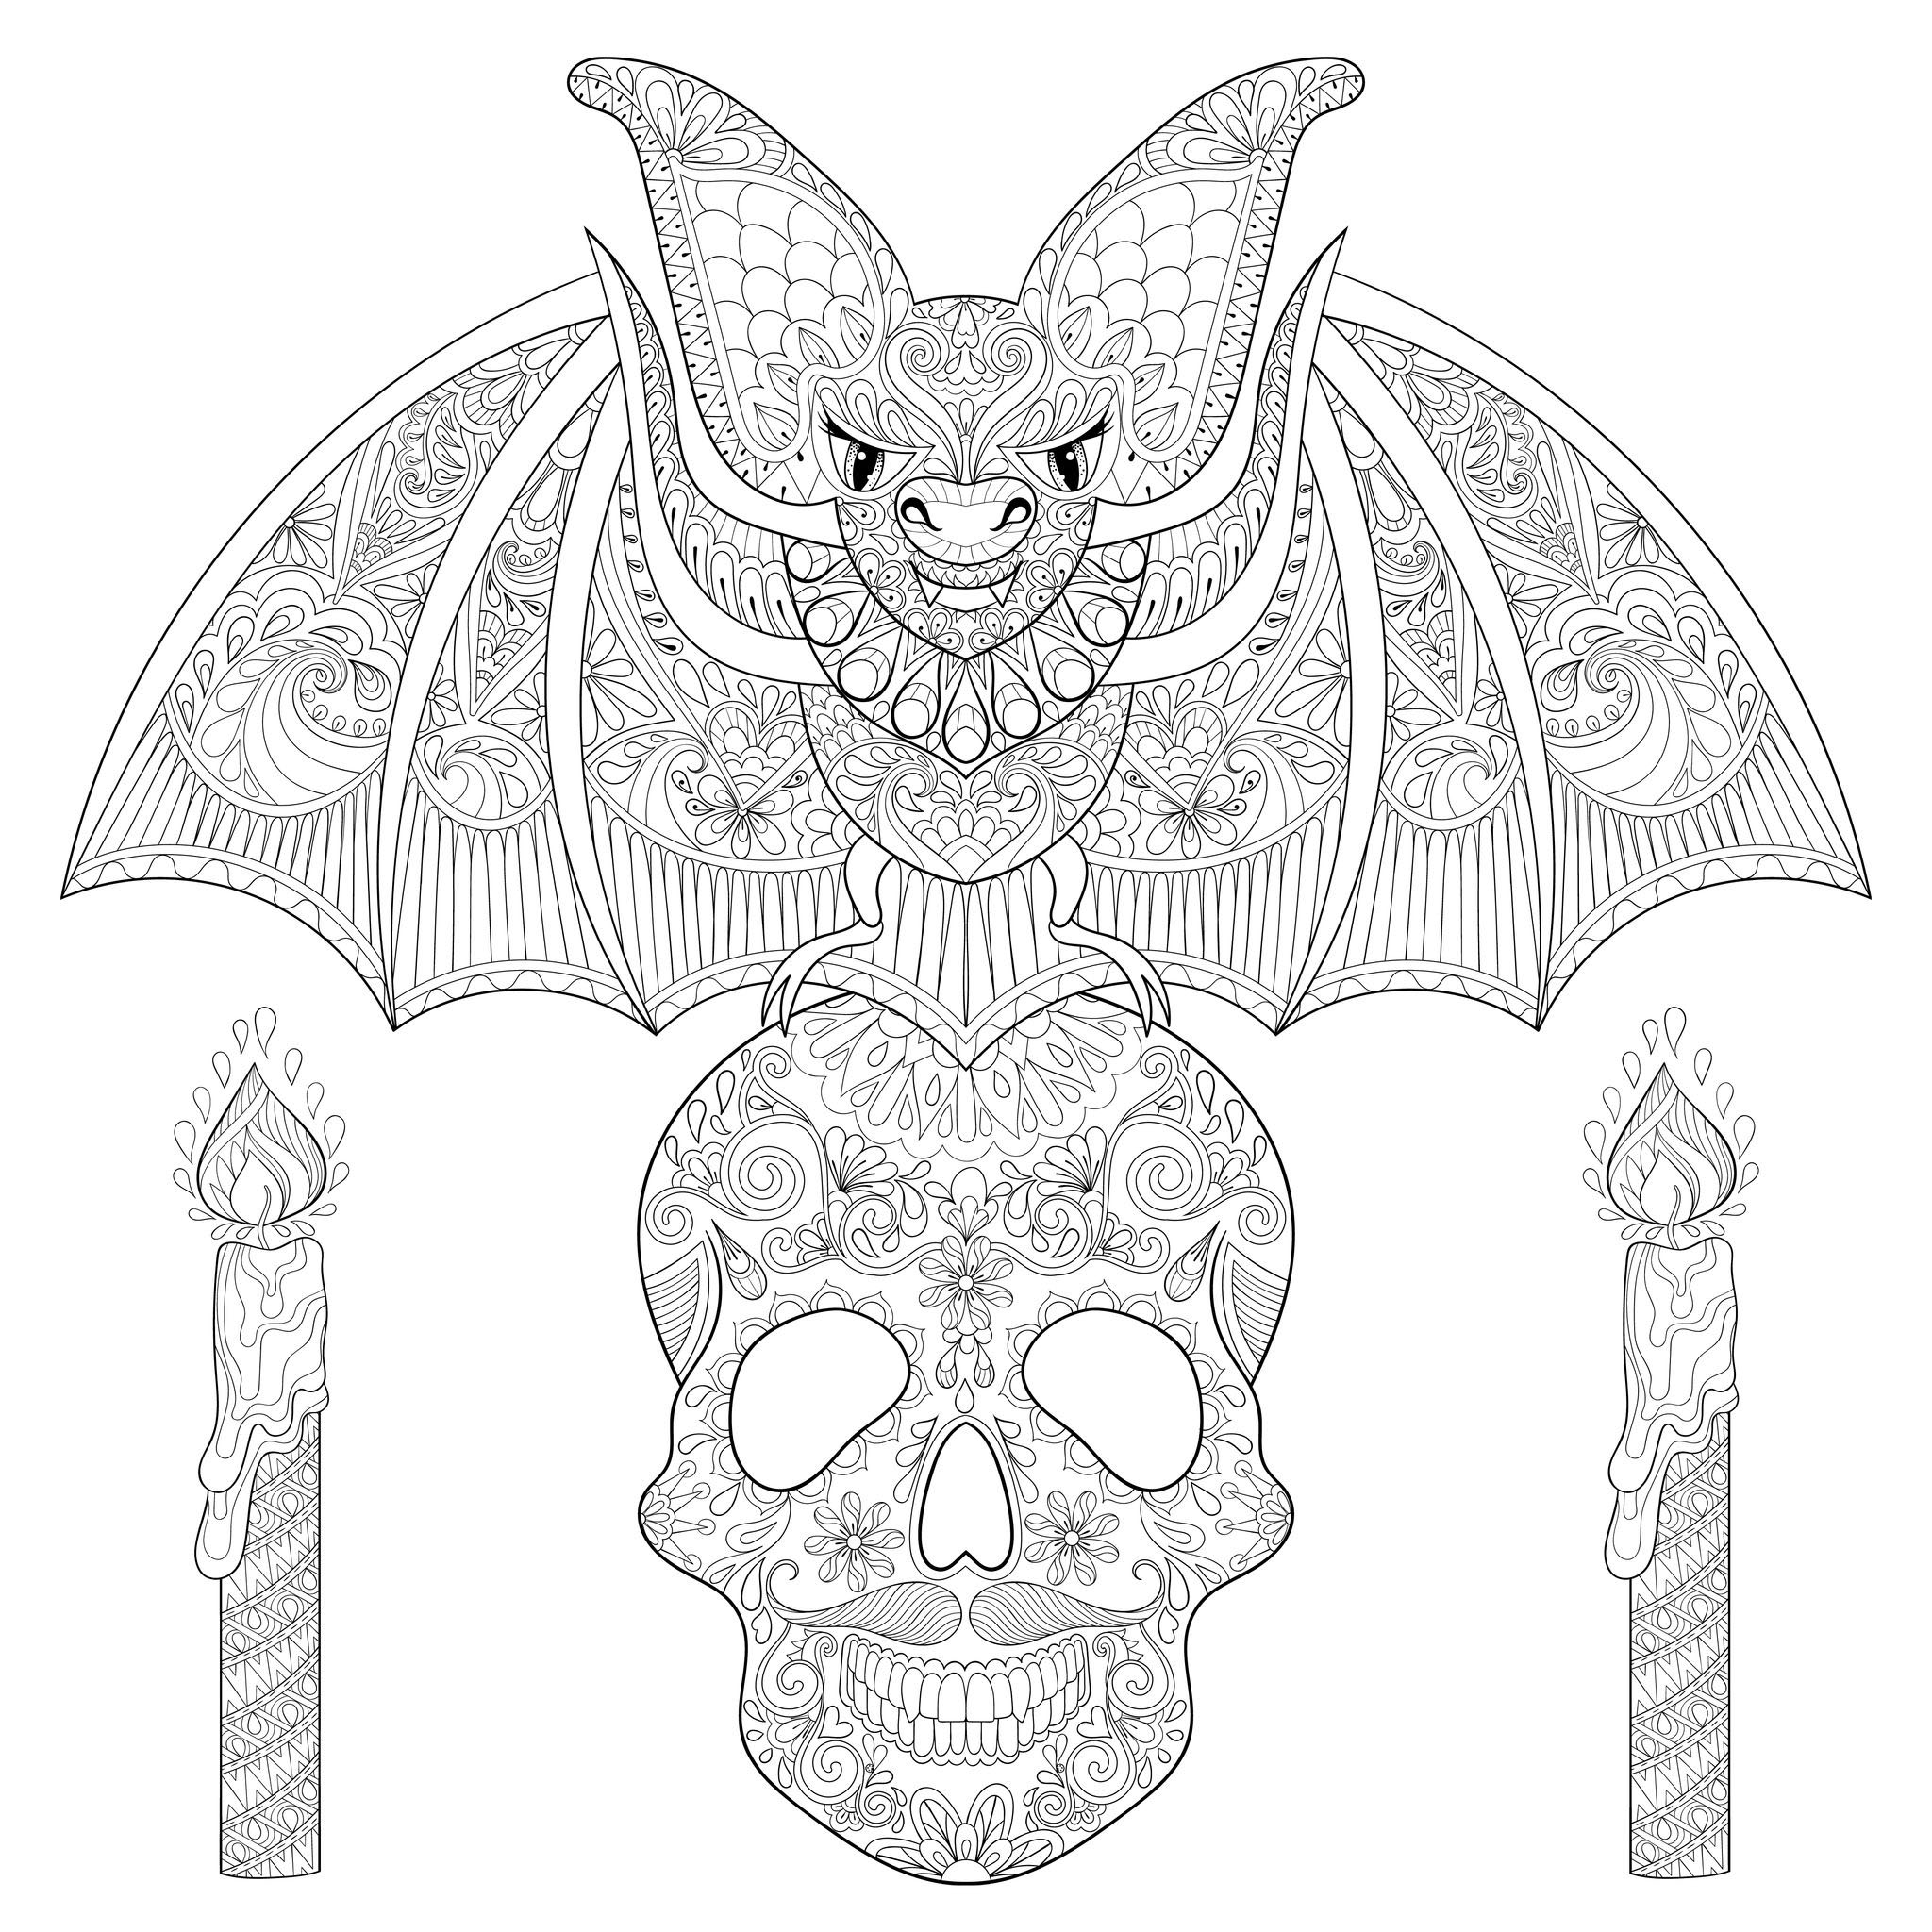 Bonito morcego numa caveira de esqueleto, com velas. Cada elemento está repleto de padrões maléficos, Fonte : 123rf   Artista : Ipanki